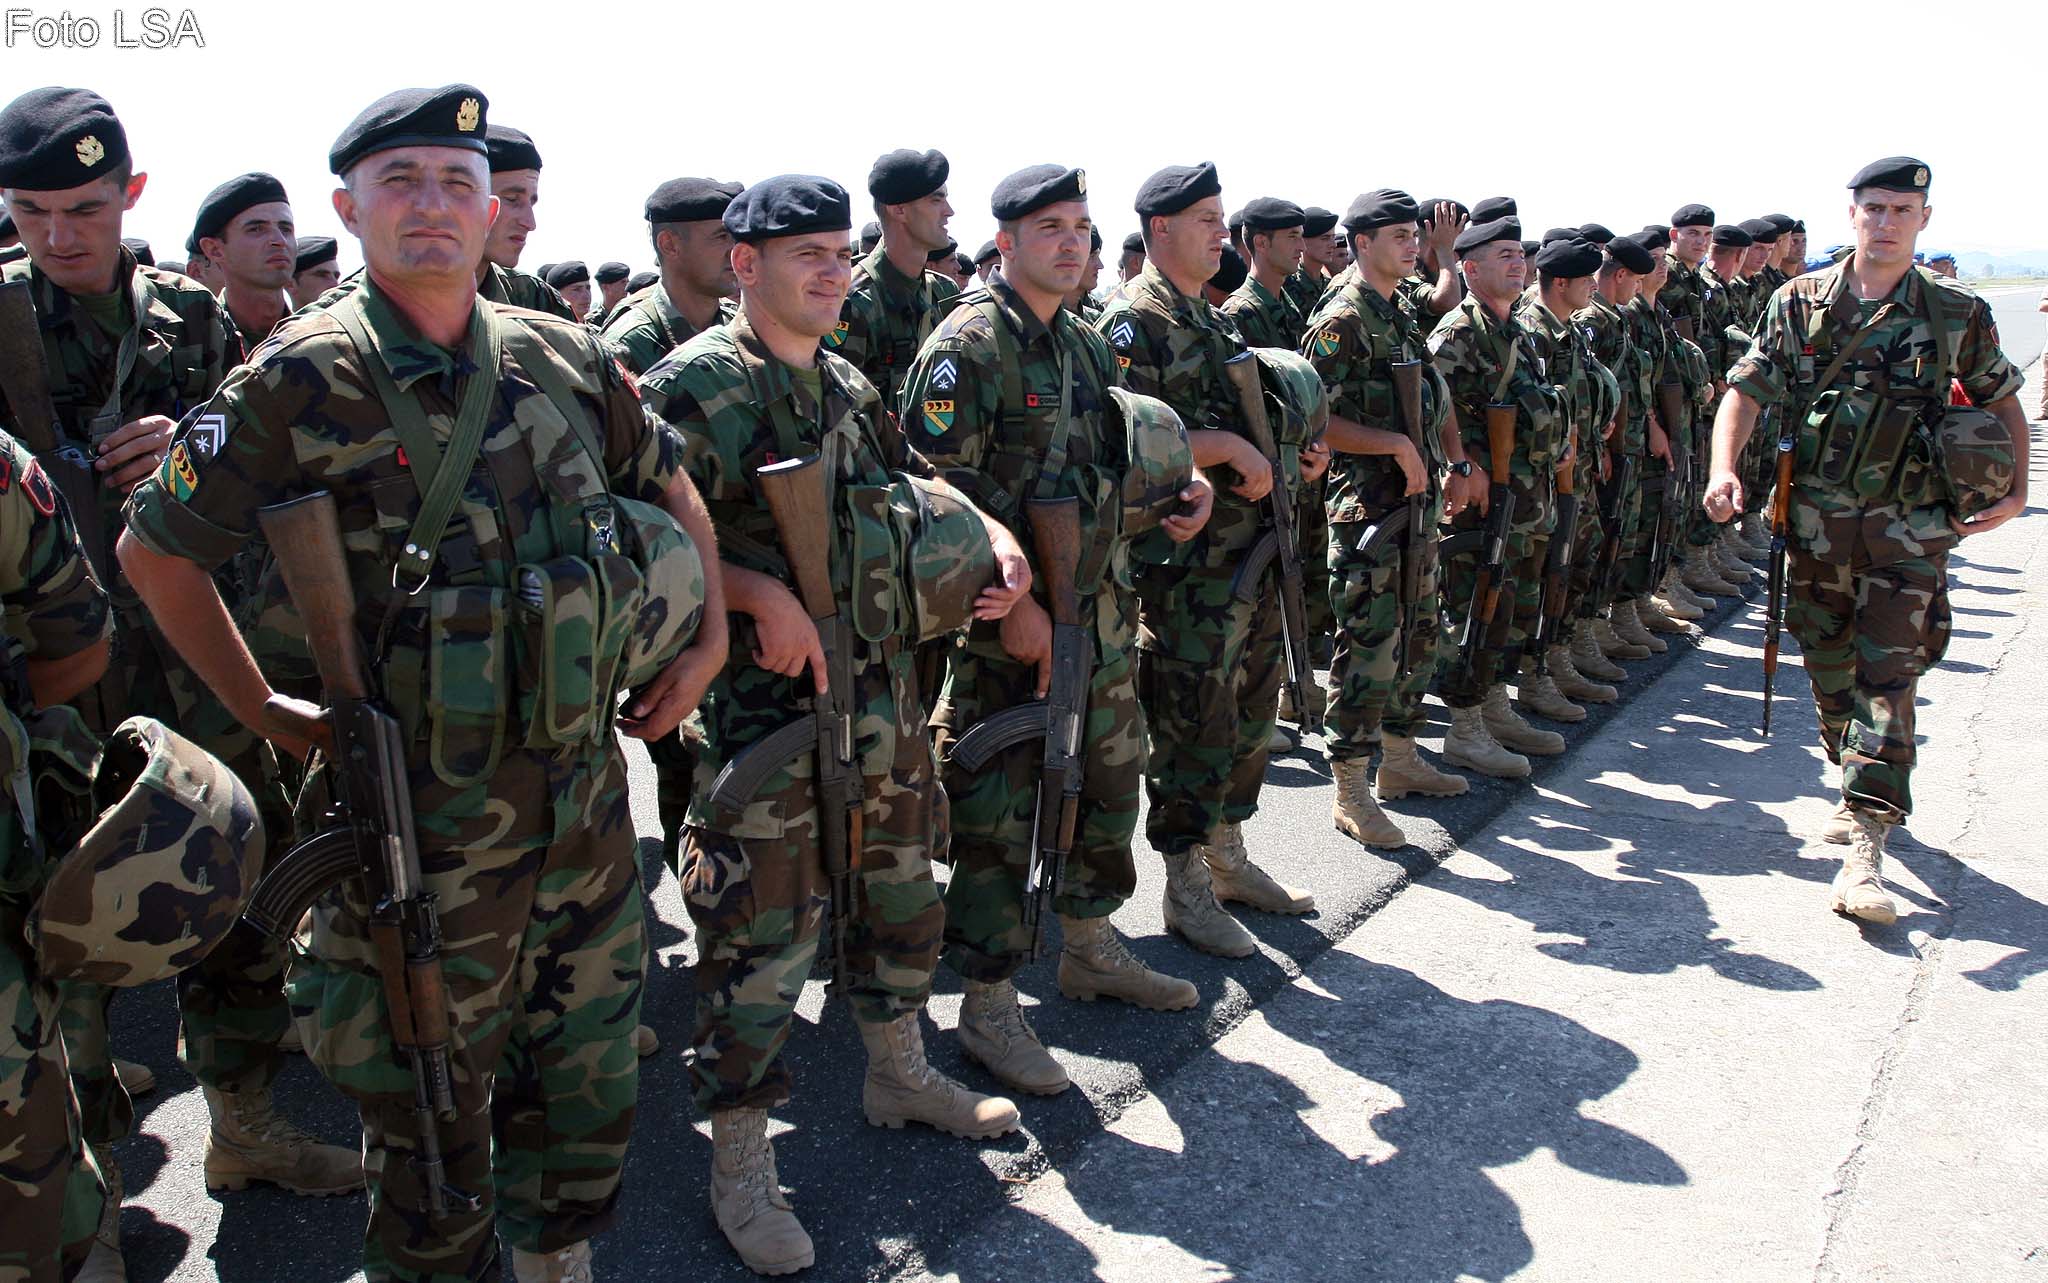 Ushtaret komando, gjate ceremonise se percjelljes se dy kontingjenteve te trupave ushtarake shqiptare ne misione paqeruajtese ne Afganistan dhe ne Cad.